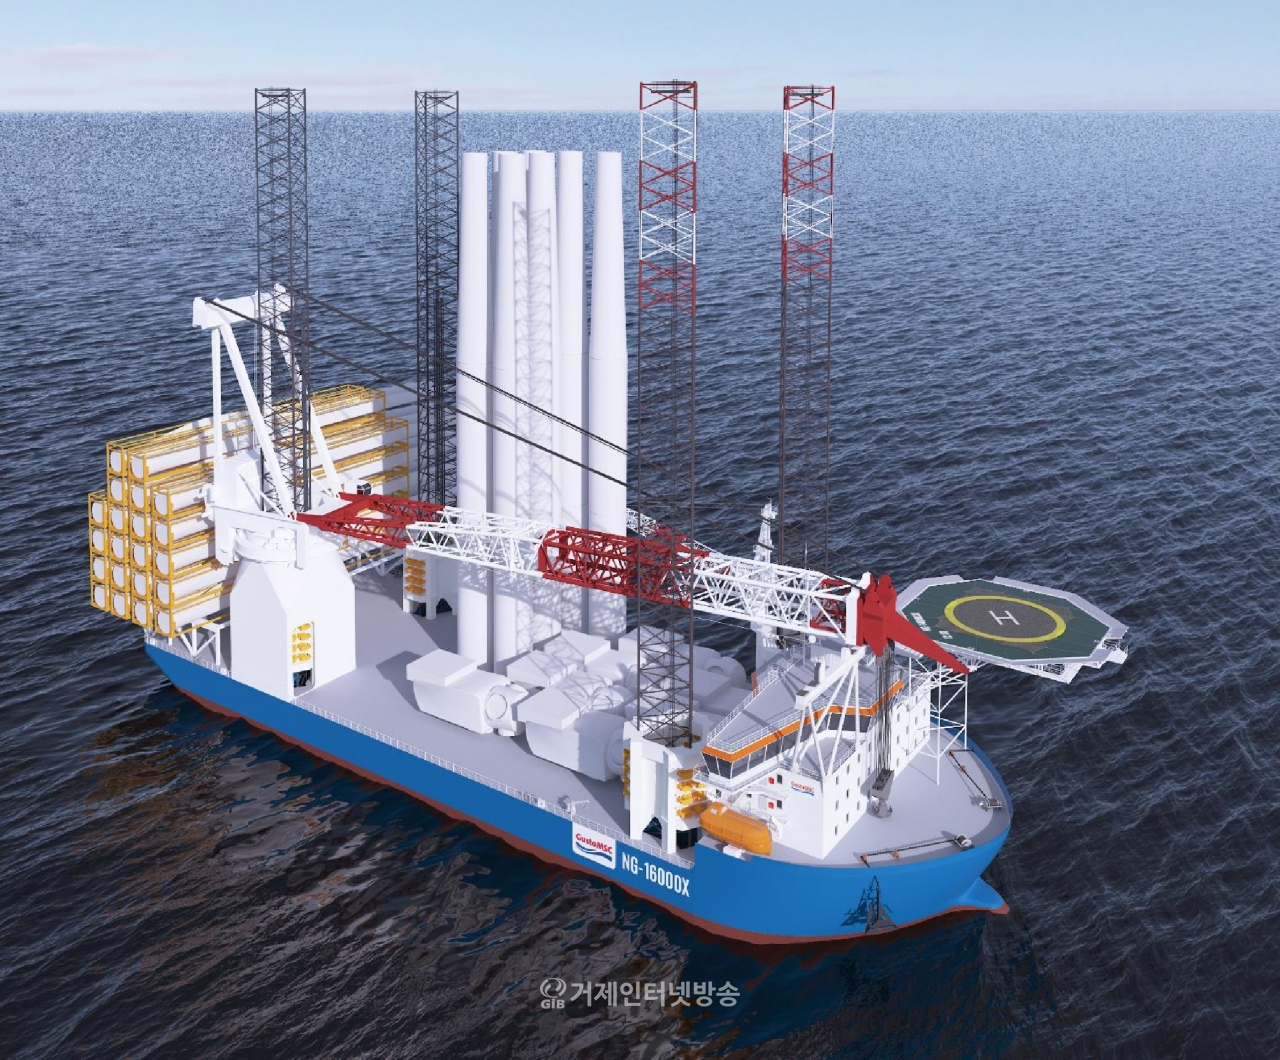 대우조선해양이 건조중인 대형 해상풍력발전기 설치선 ‘NG-16000X’ 디자인 조감도. 대우조선해양 제공